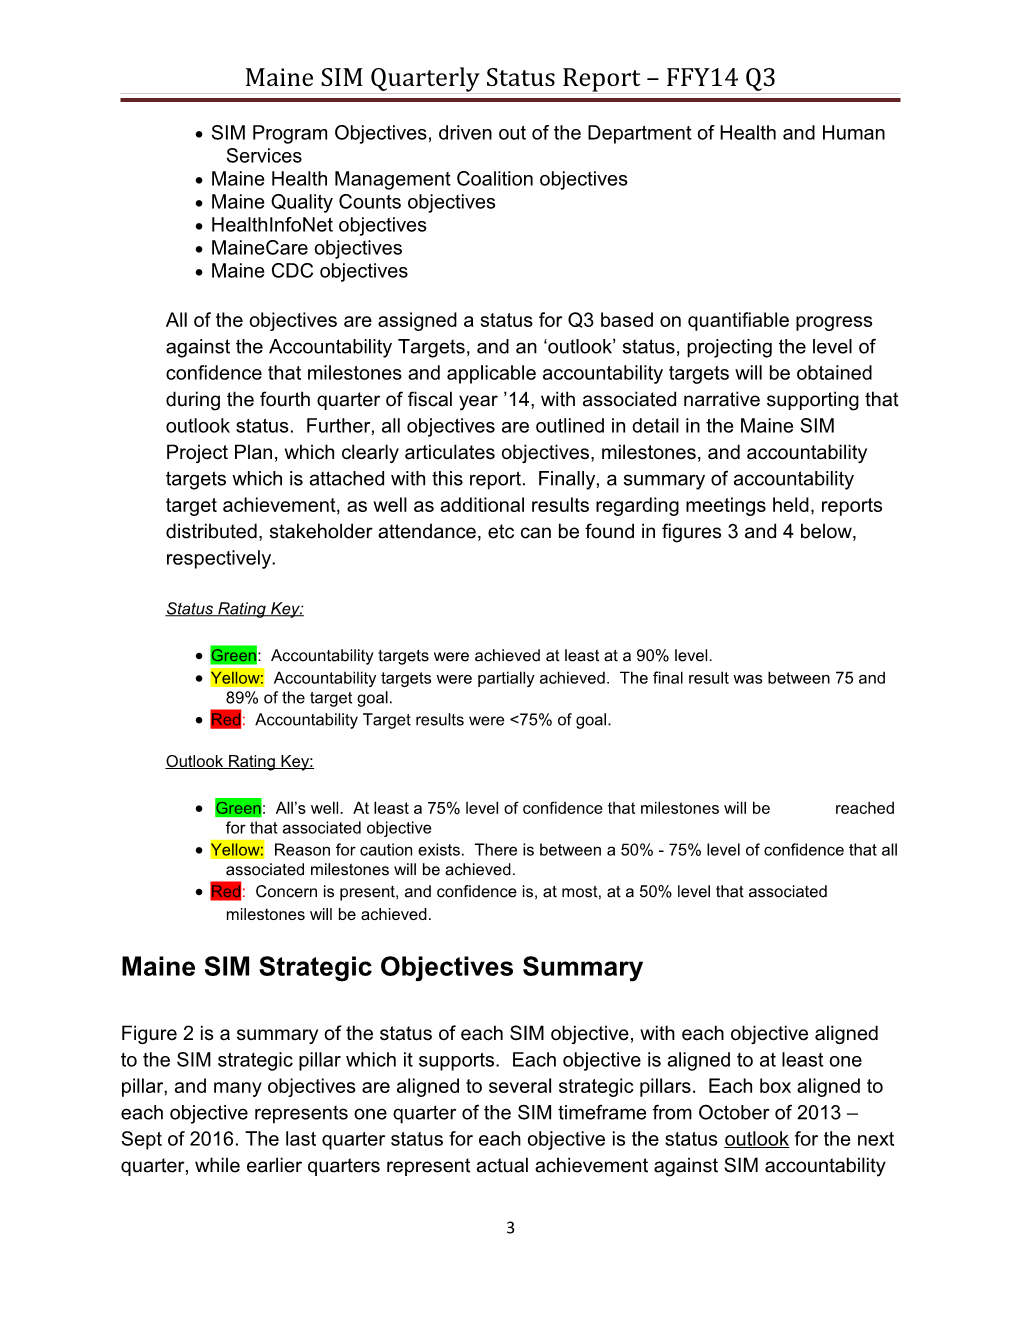 Maine SIM Quarterly Status Report FFY14 Q3